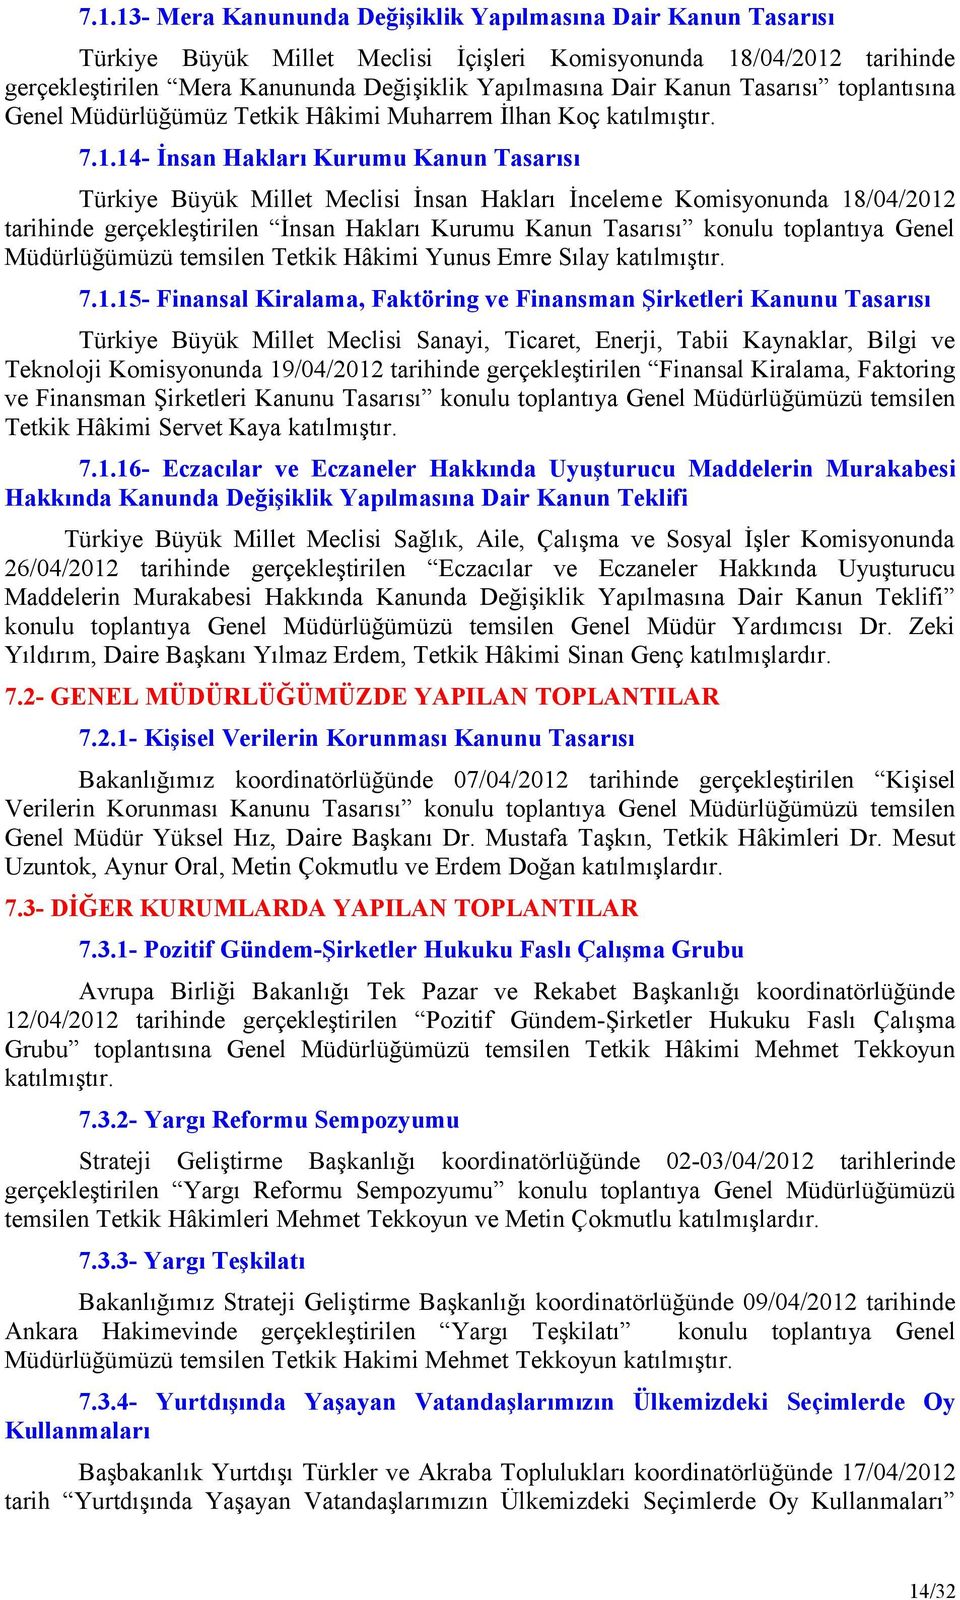 14- İnsan Hakları Kurumu Kanun Tasarısı Türkiye Büyük Millet Meclisi İnsan Hakları İnceleme Komisyonunda 18/04/2012 tarihinde gerçekleştirilen İnsan Hakları Kurumu Kanun Tasarısı konulu toplantıya